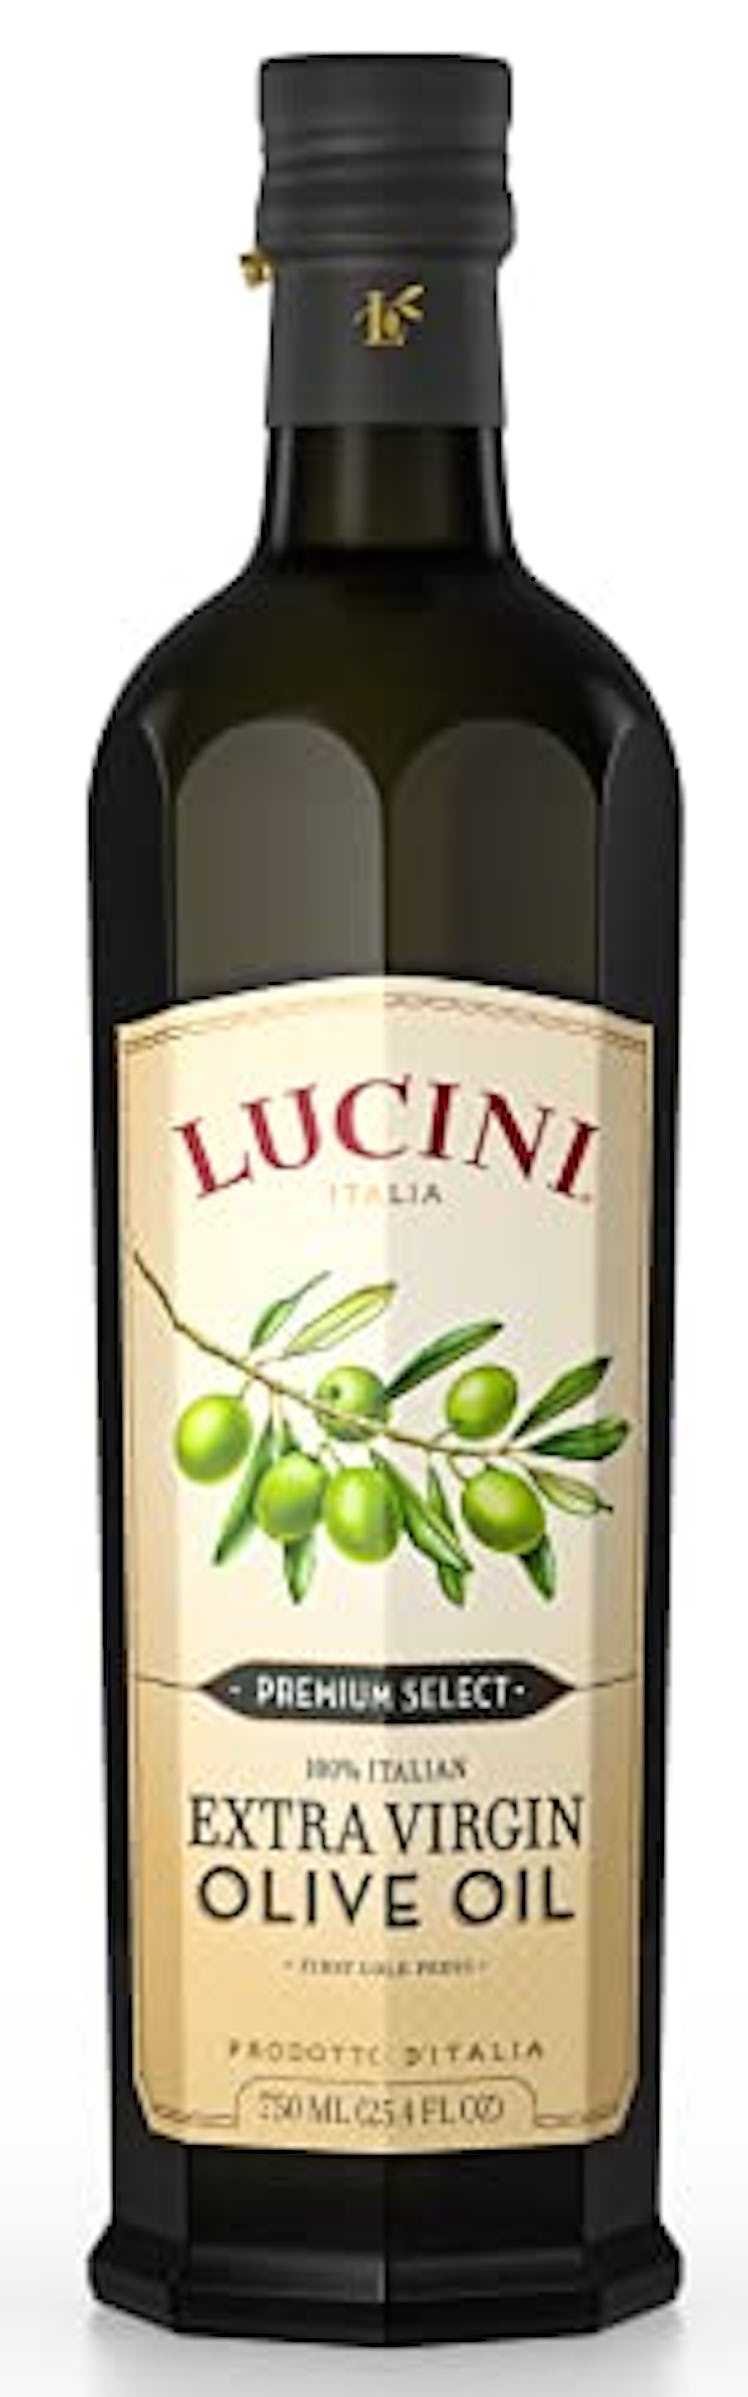 Lucini Italia Premium Select Extra Virgin Olive Oil